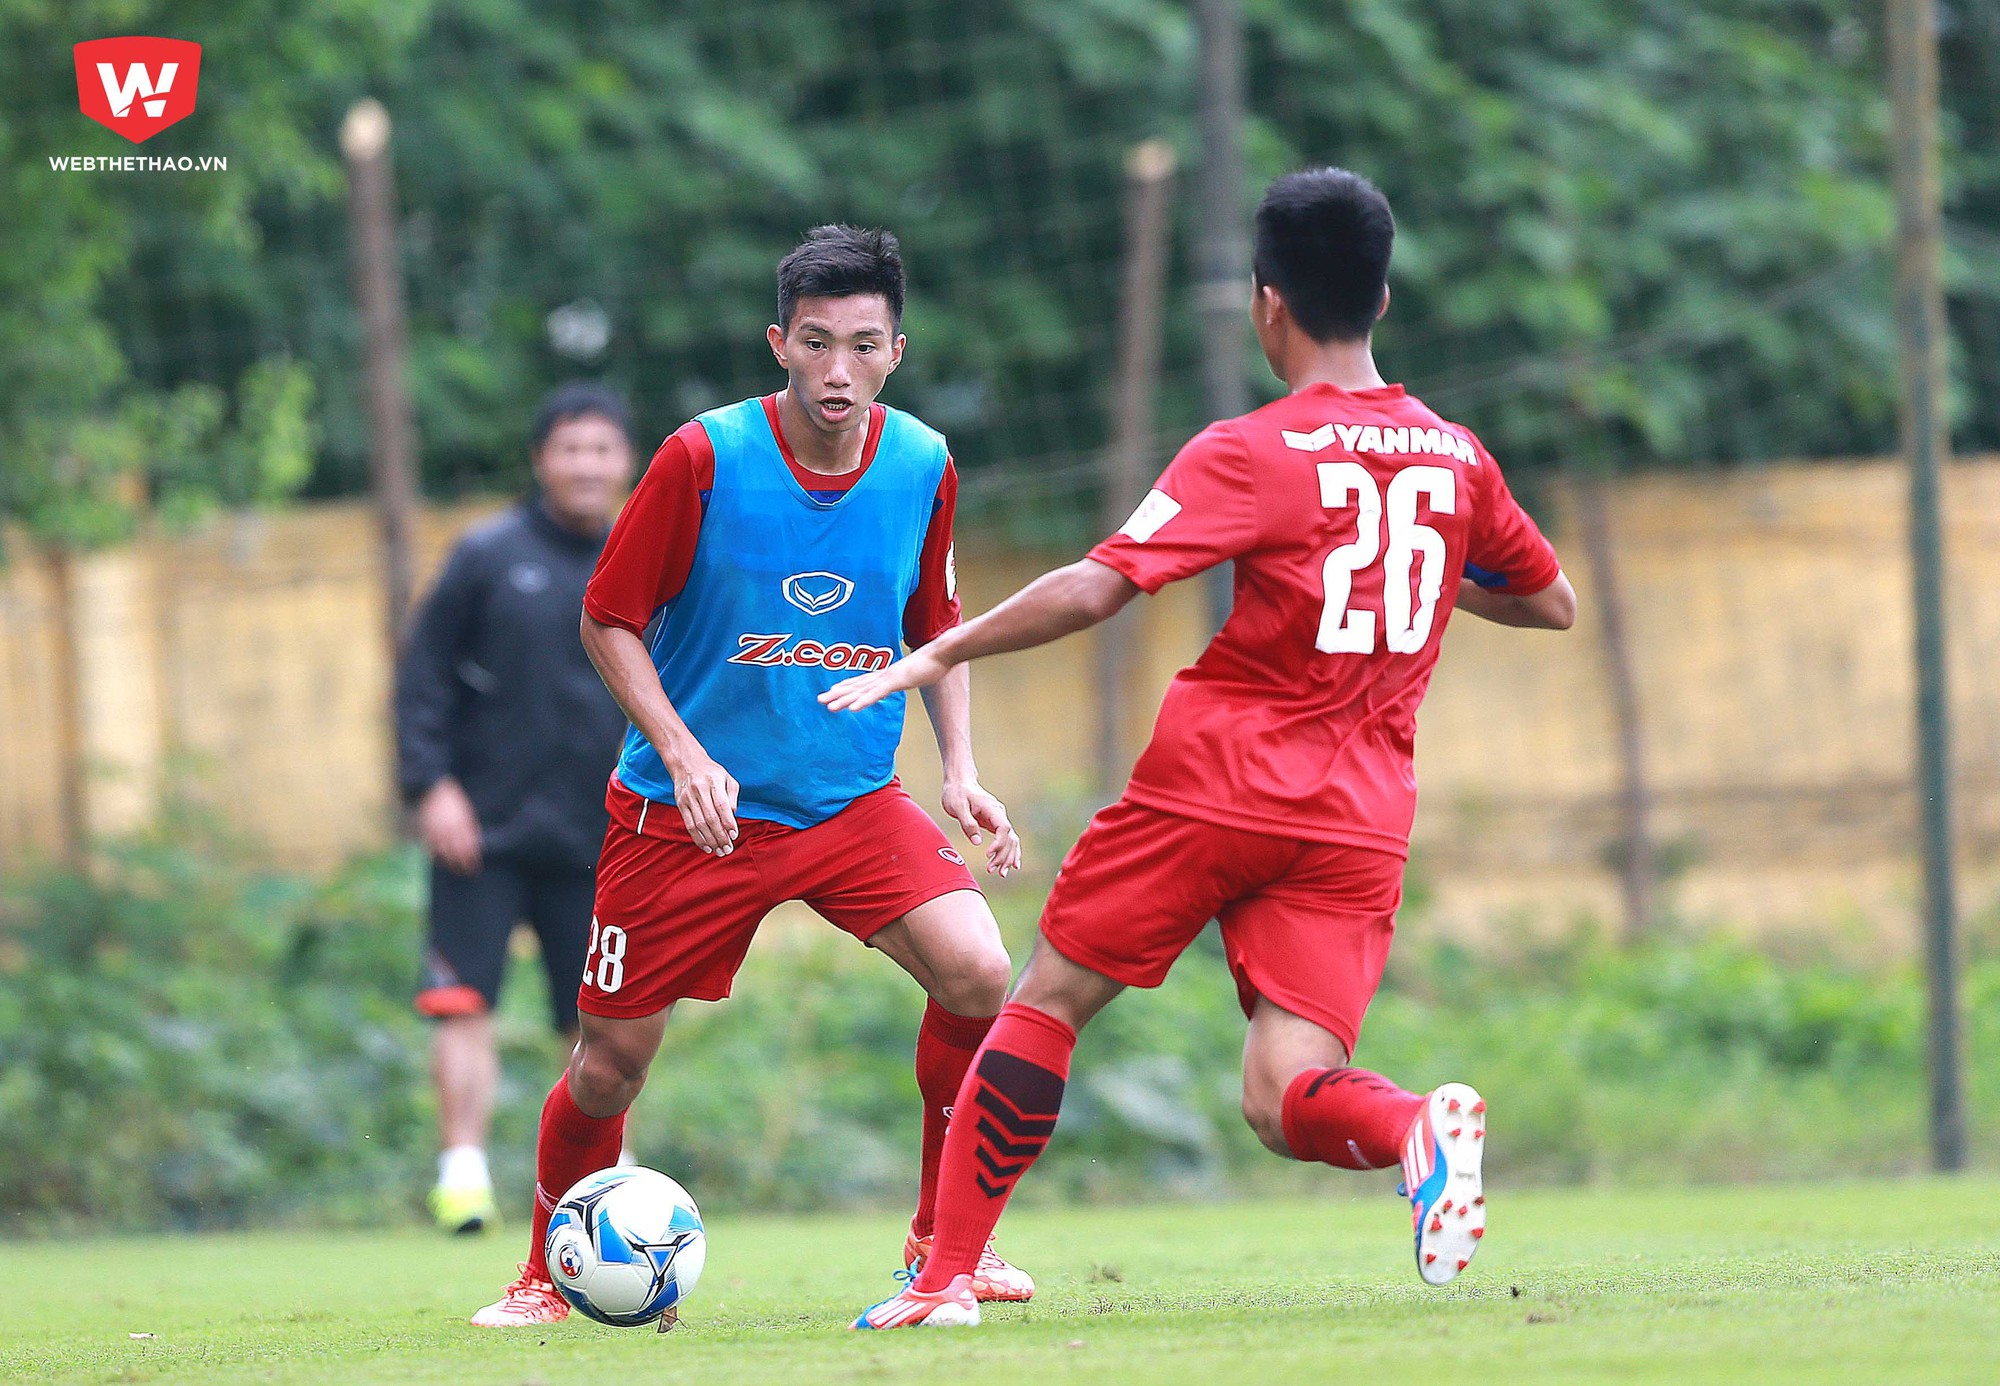 Sau khi trở về từ SEA Games 29, Văn Hậu tiếp tục khoác áo U18 Việt Nam tại giải U18 Đông Nam Á. Ảnh Hải Đăng